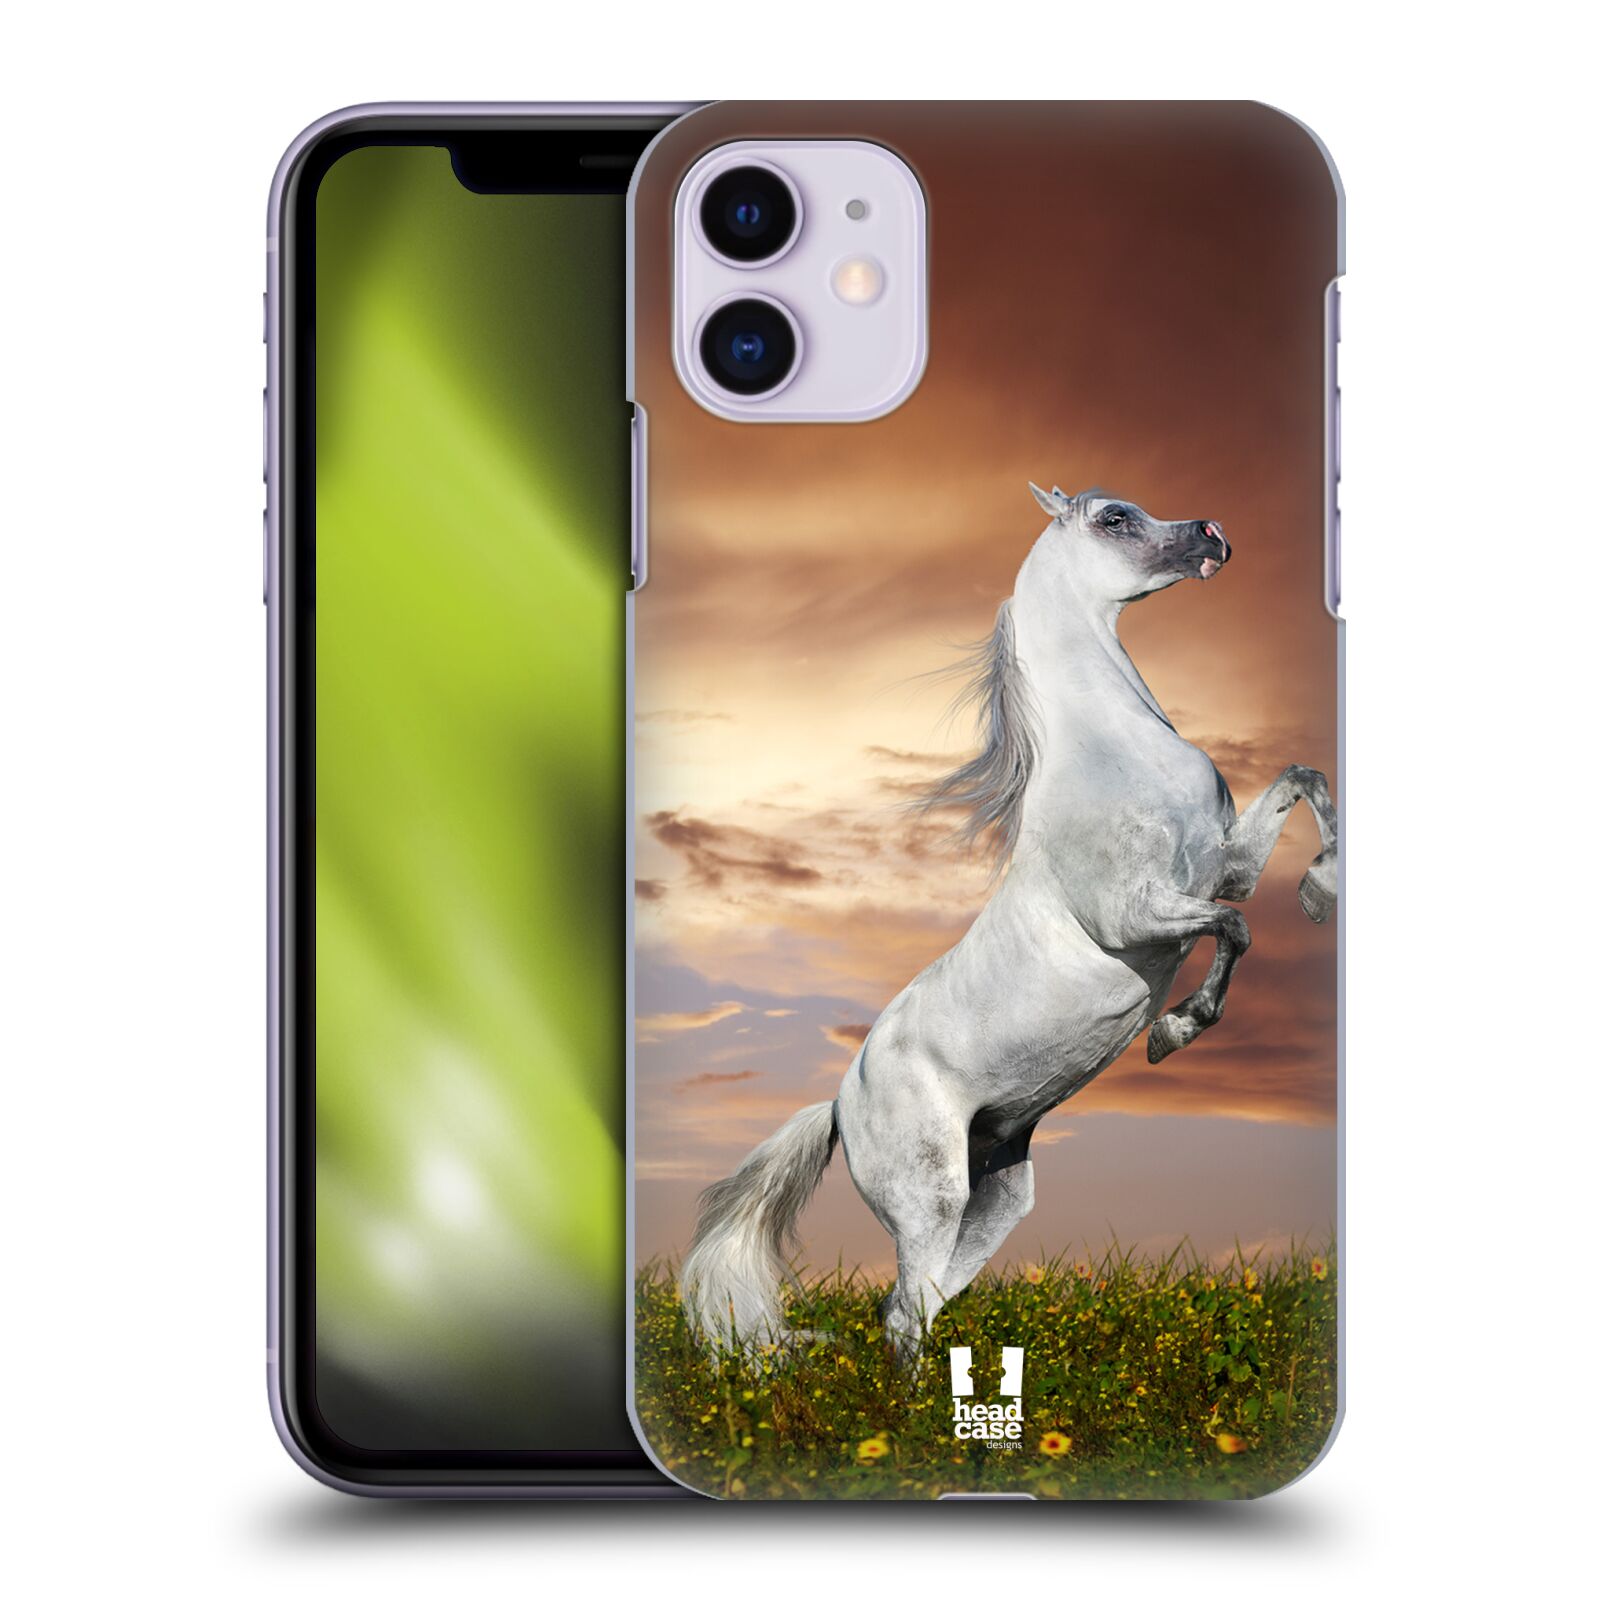 Zadní obal pro mobil Apple Iphone 11 - HEAD CASE - Svět zvířat divoký kůň